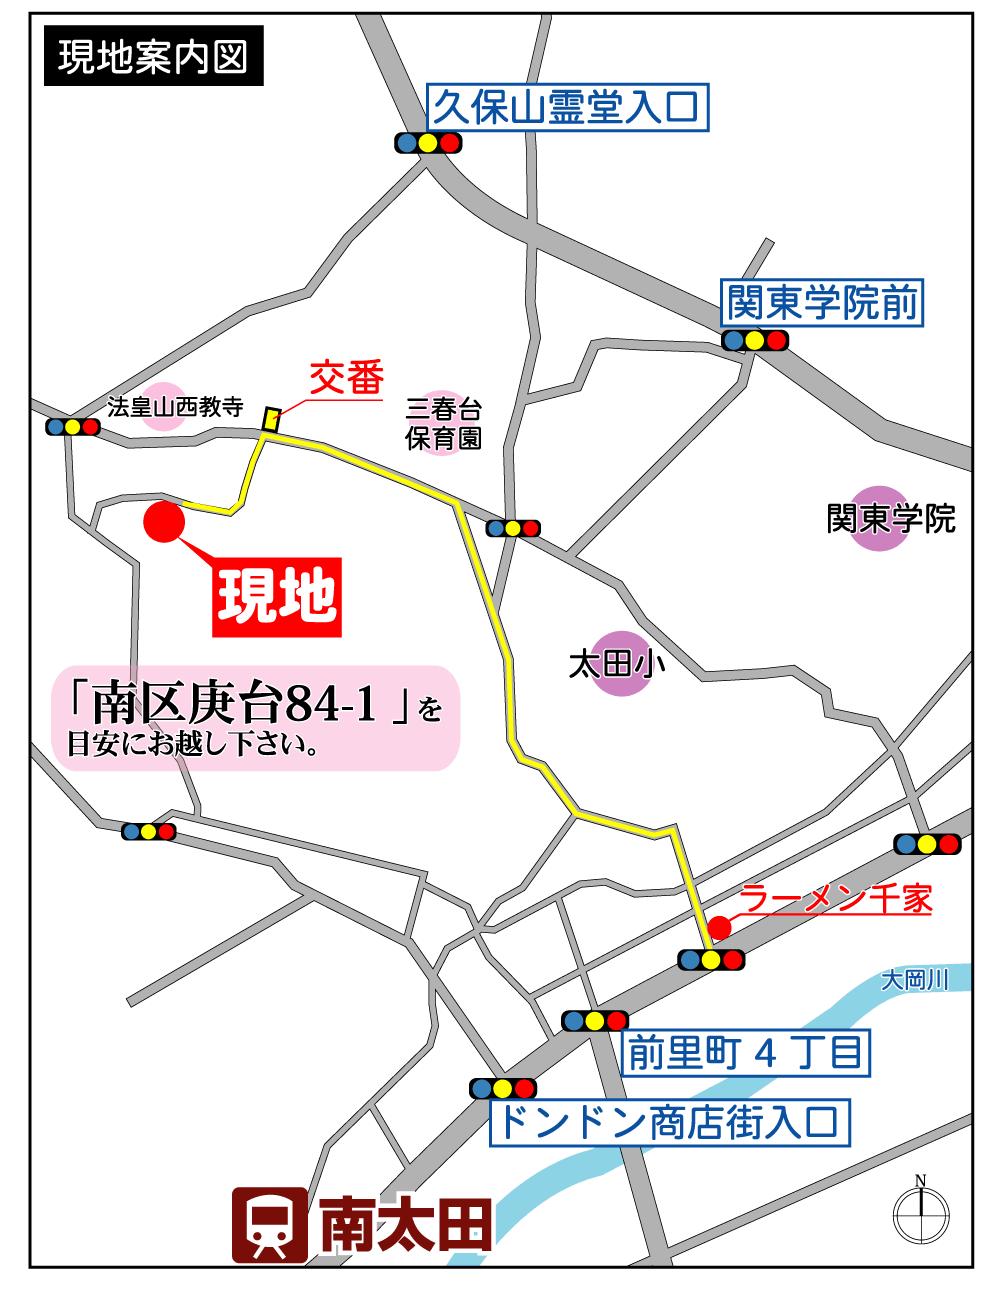 Local guide map. Yokohama Minami-ku, Kanoedai (Kanoedai) 84-1